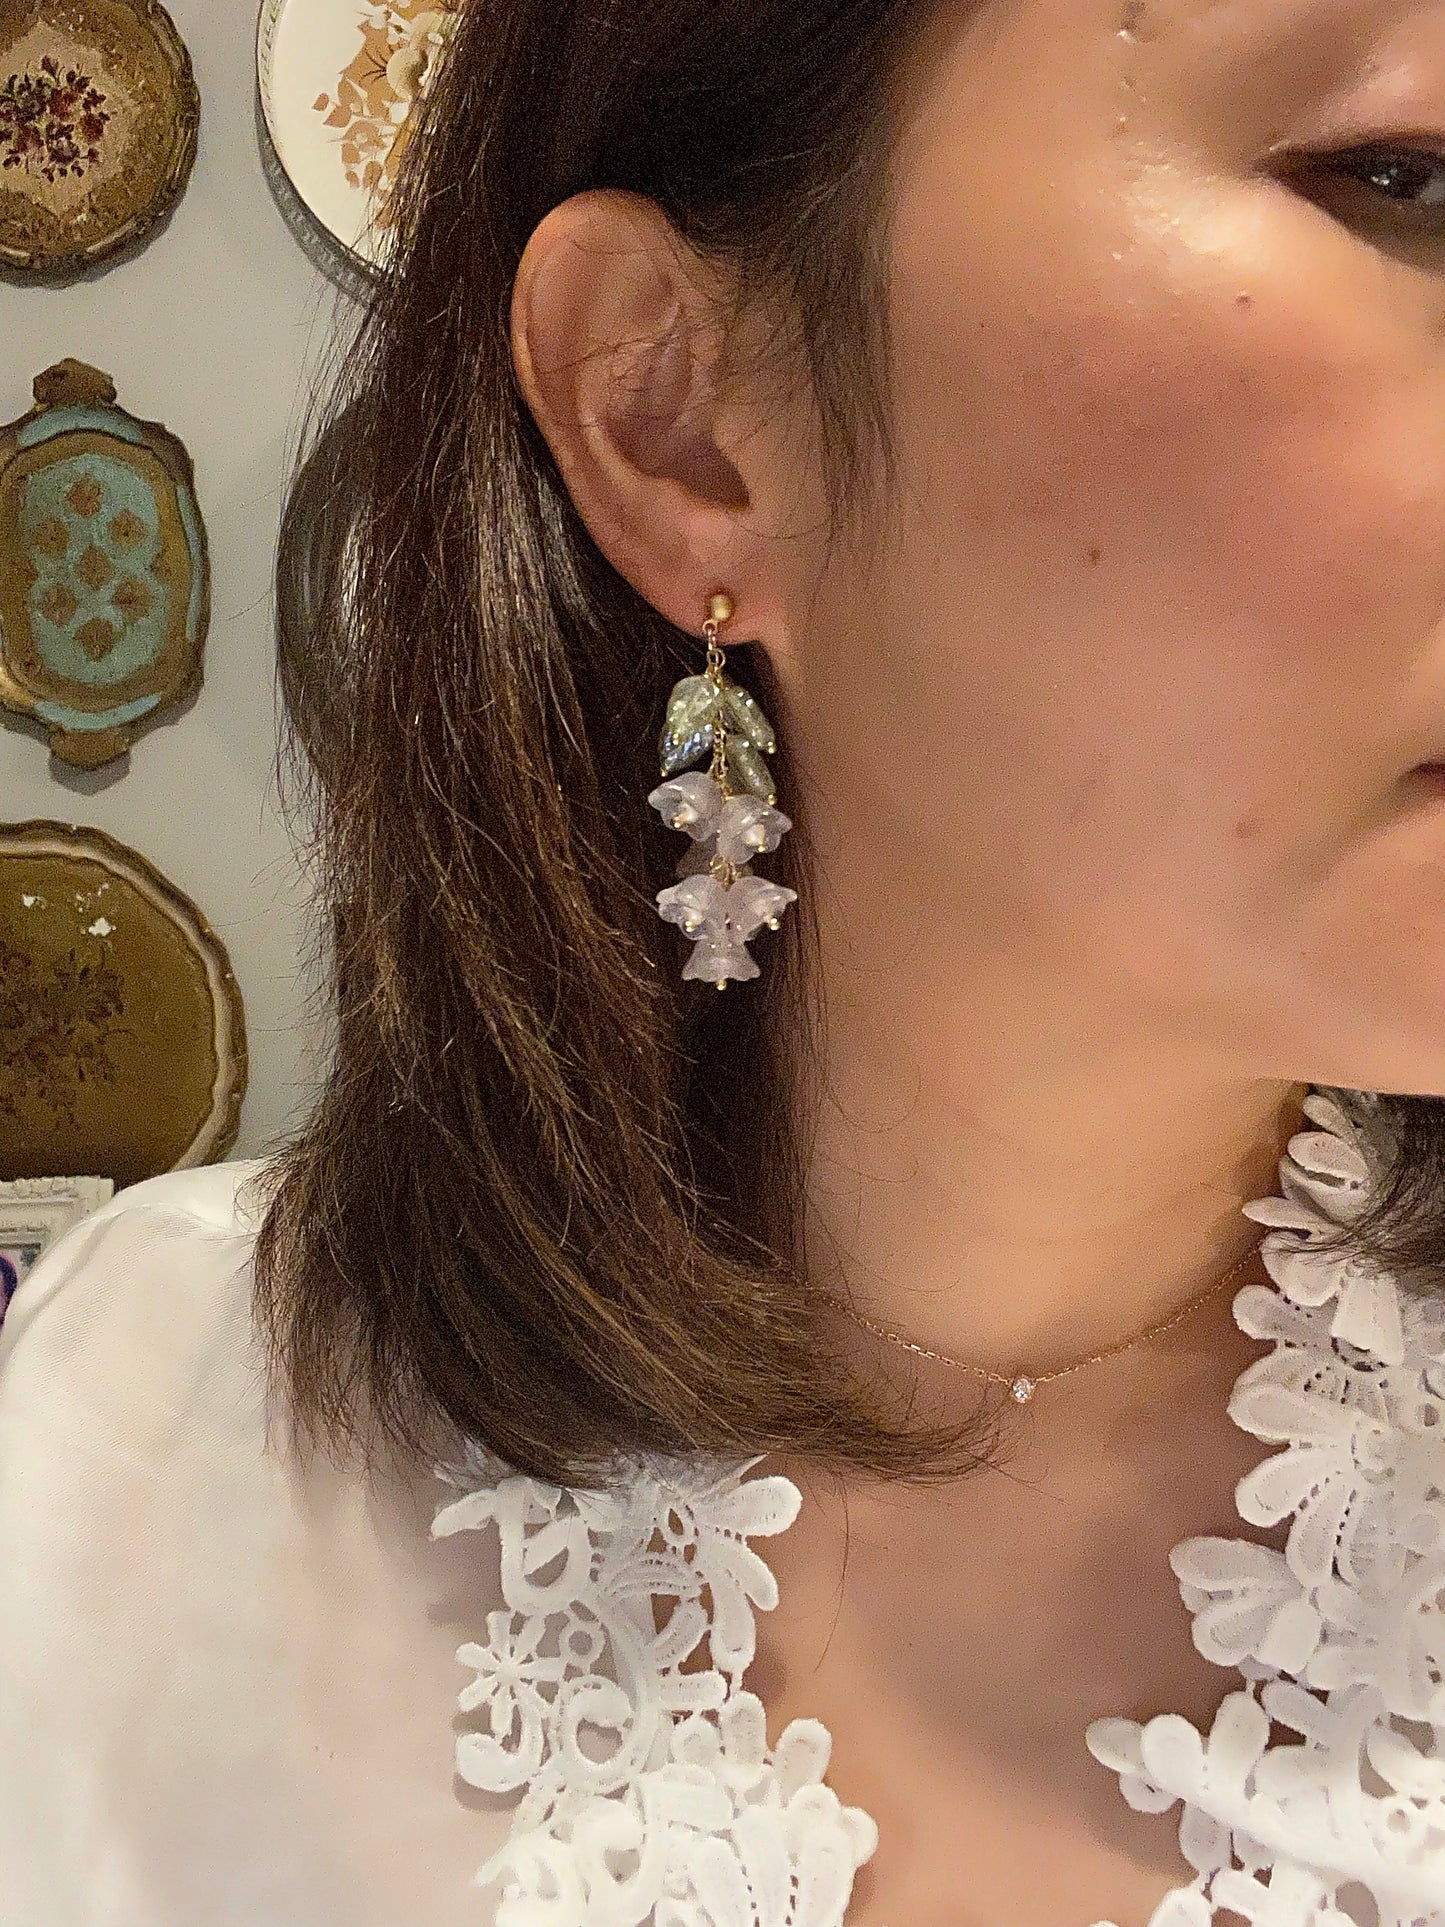 Canterbury bell flowers earrings in cream